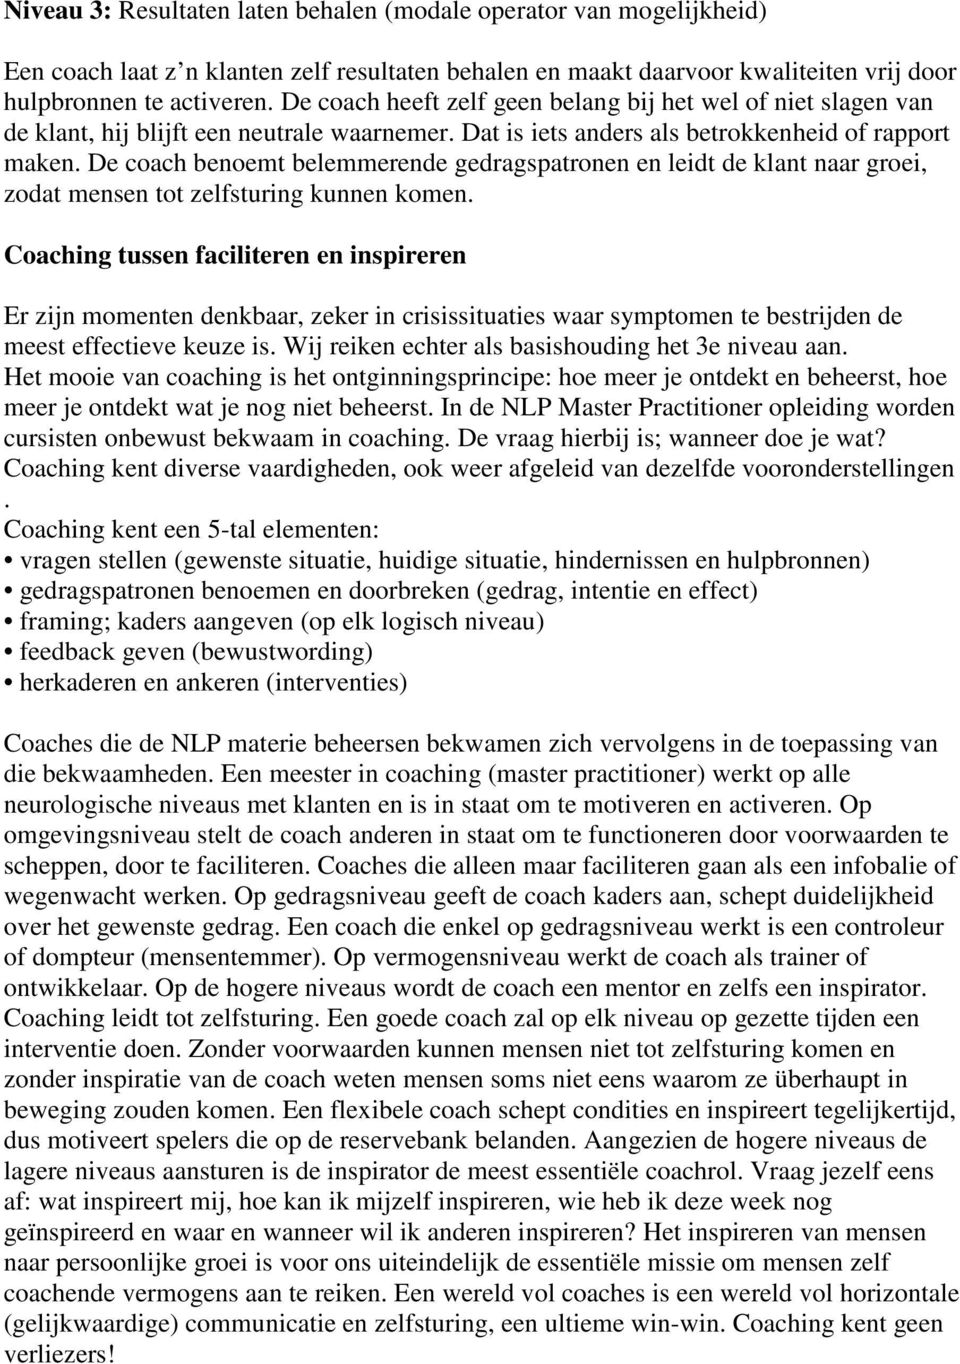 De coach benoemt belemmerende gedragspatronen en leidt de klant naar groei, zodat mensen tot zelfsturing kunnen komen.